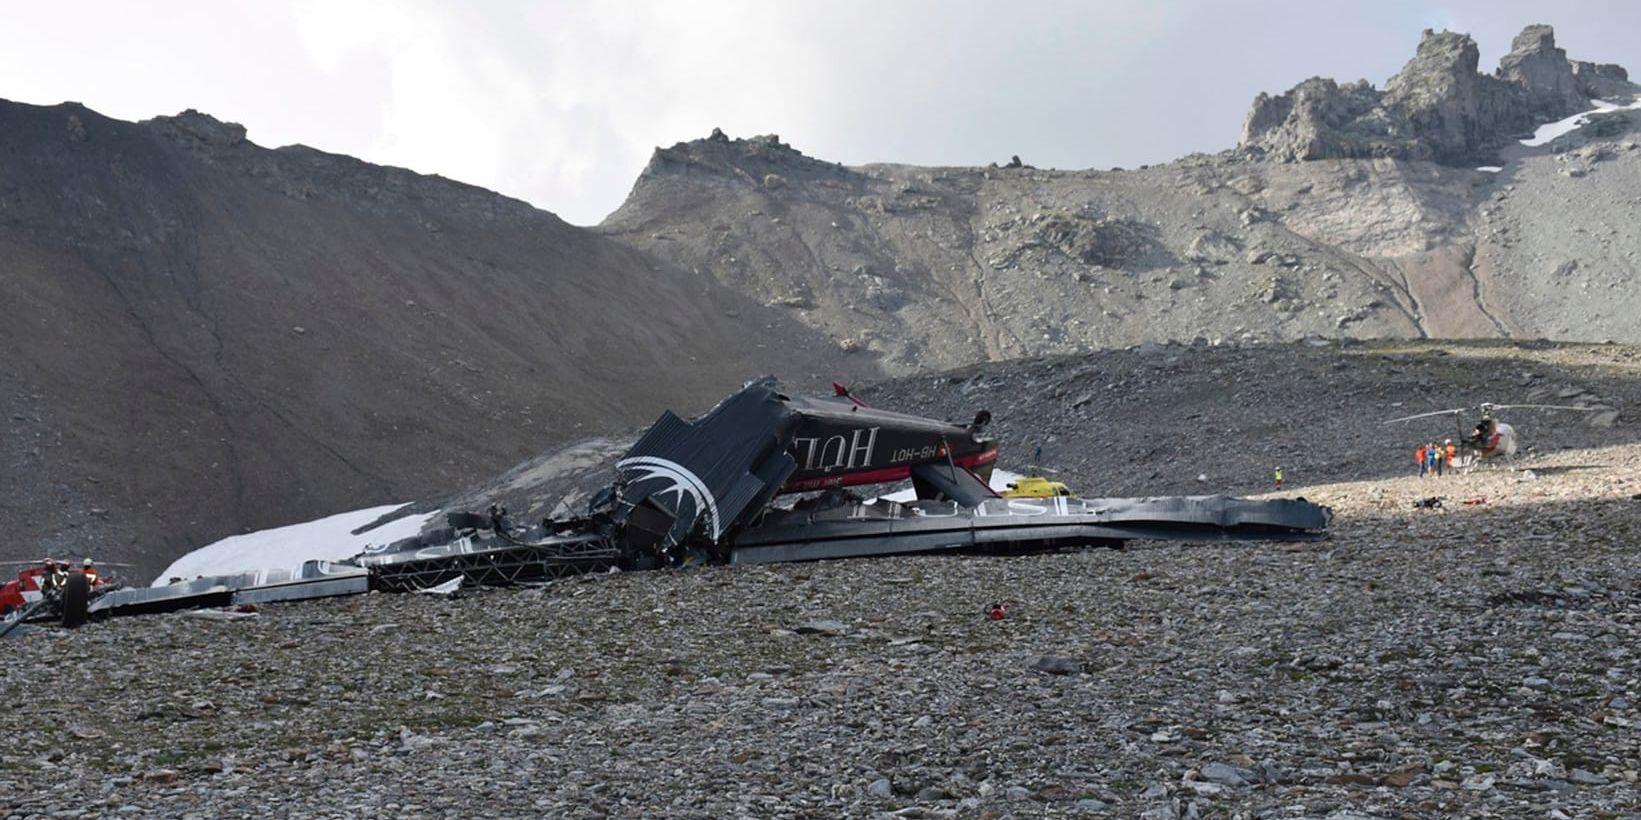 Vraket av det kraschade flygplanet i Schweiz.